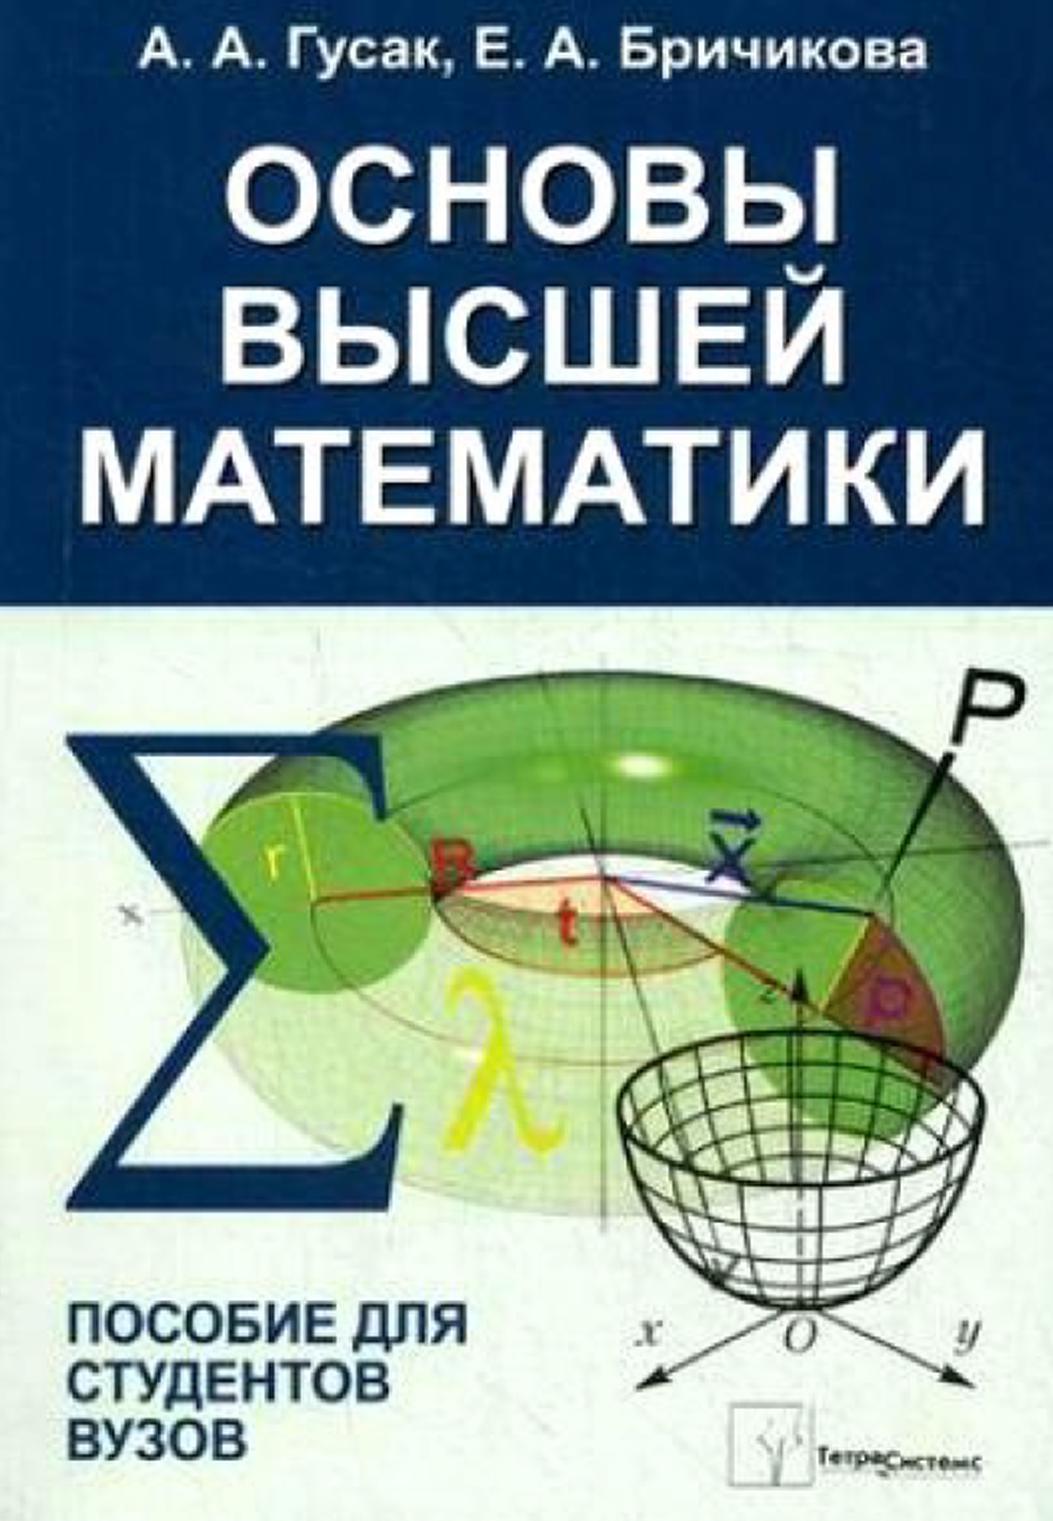 Основы высшей математики, Пособие для студентов вузов, Гусак А.А., Бричикова Е.А., 2012